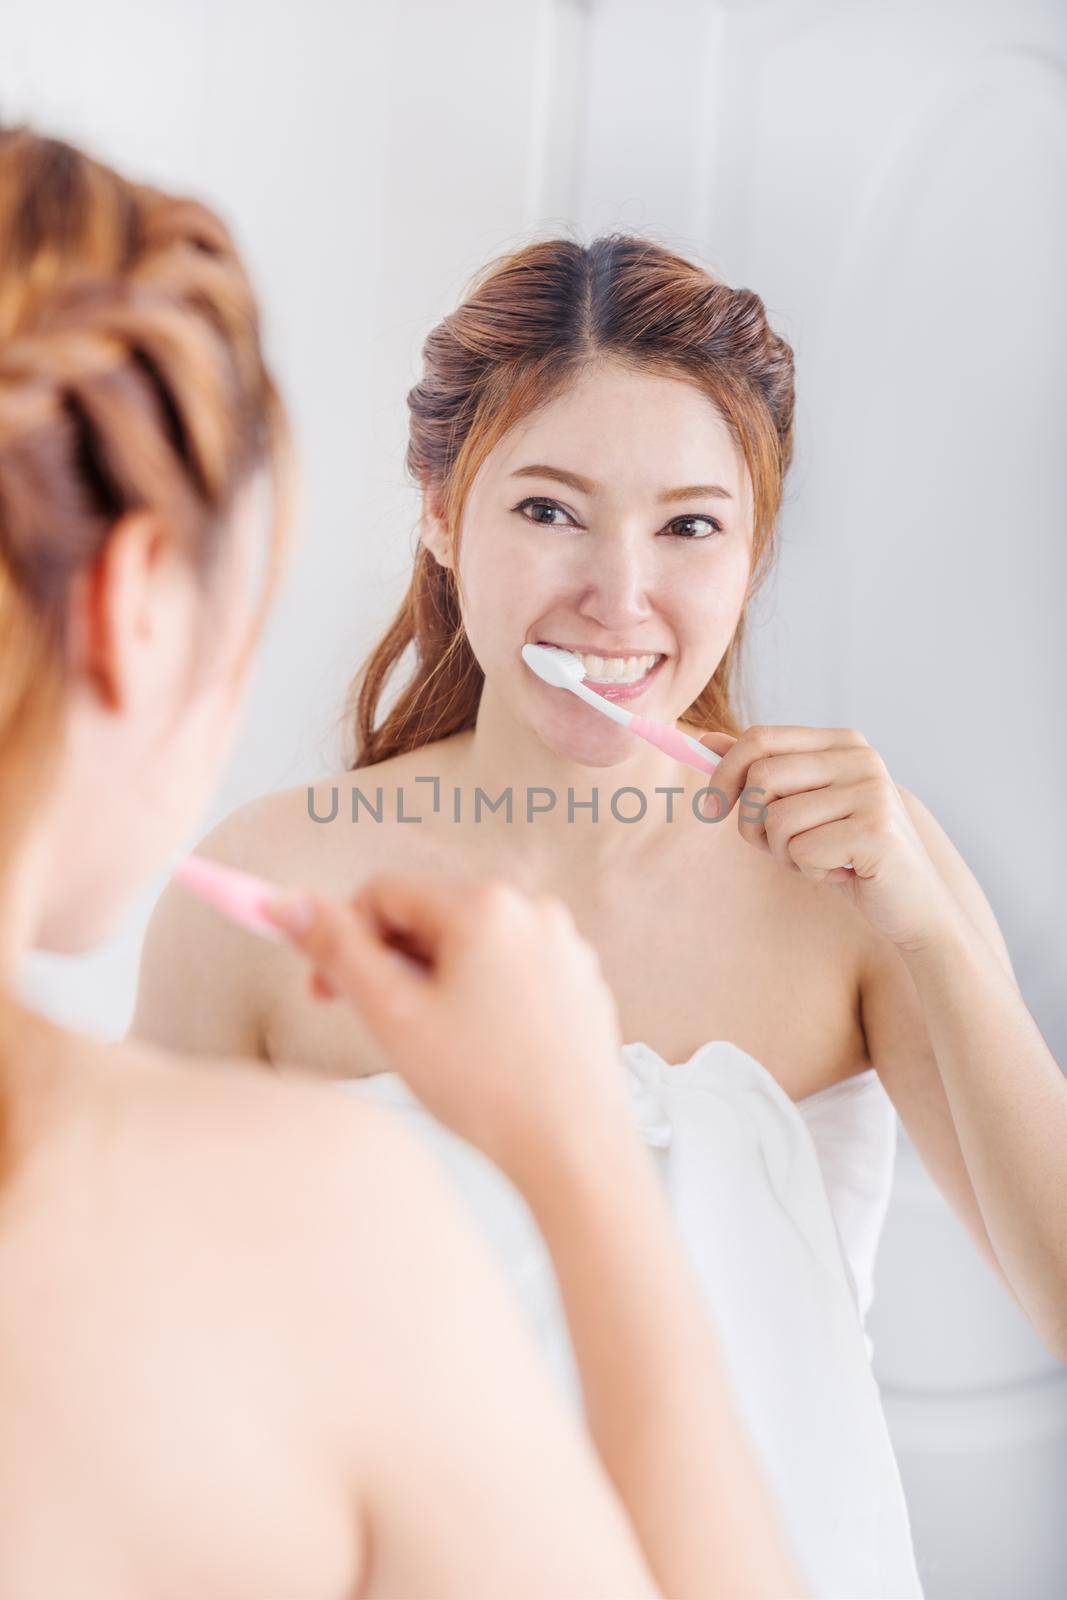 woman in bath towel brushing teeth with mirror in bathroom by geargodz